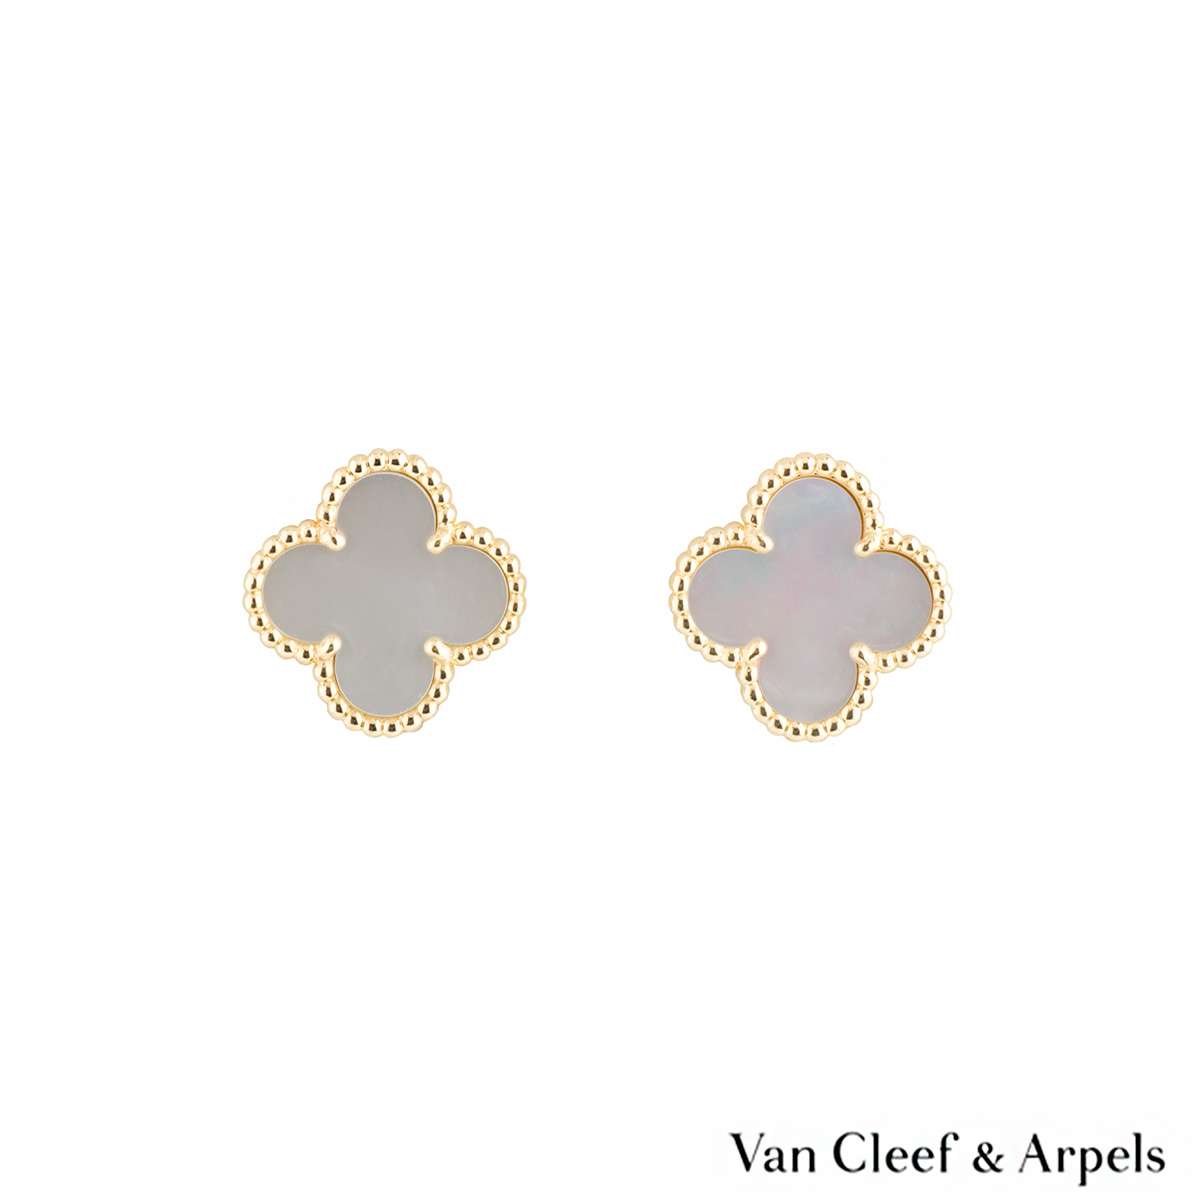 van cleef and arpels stud earrings